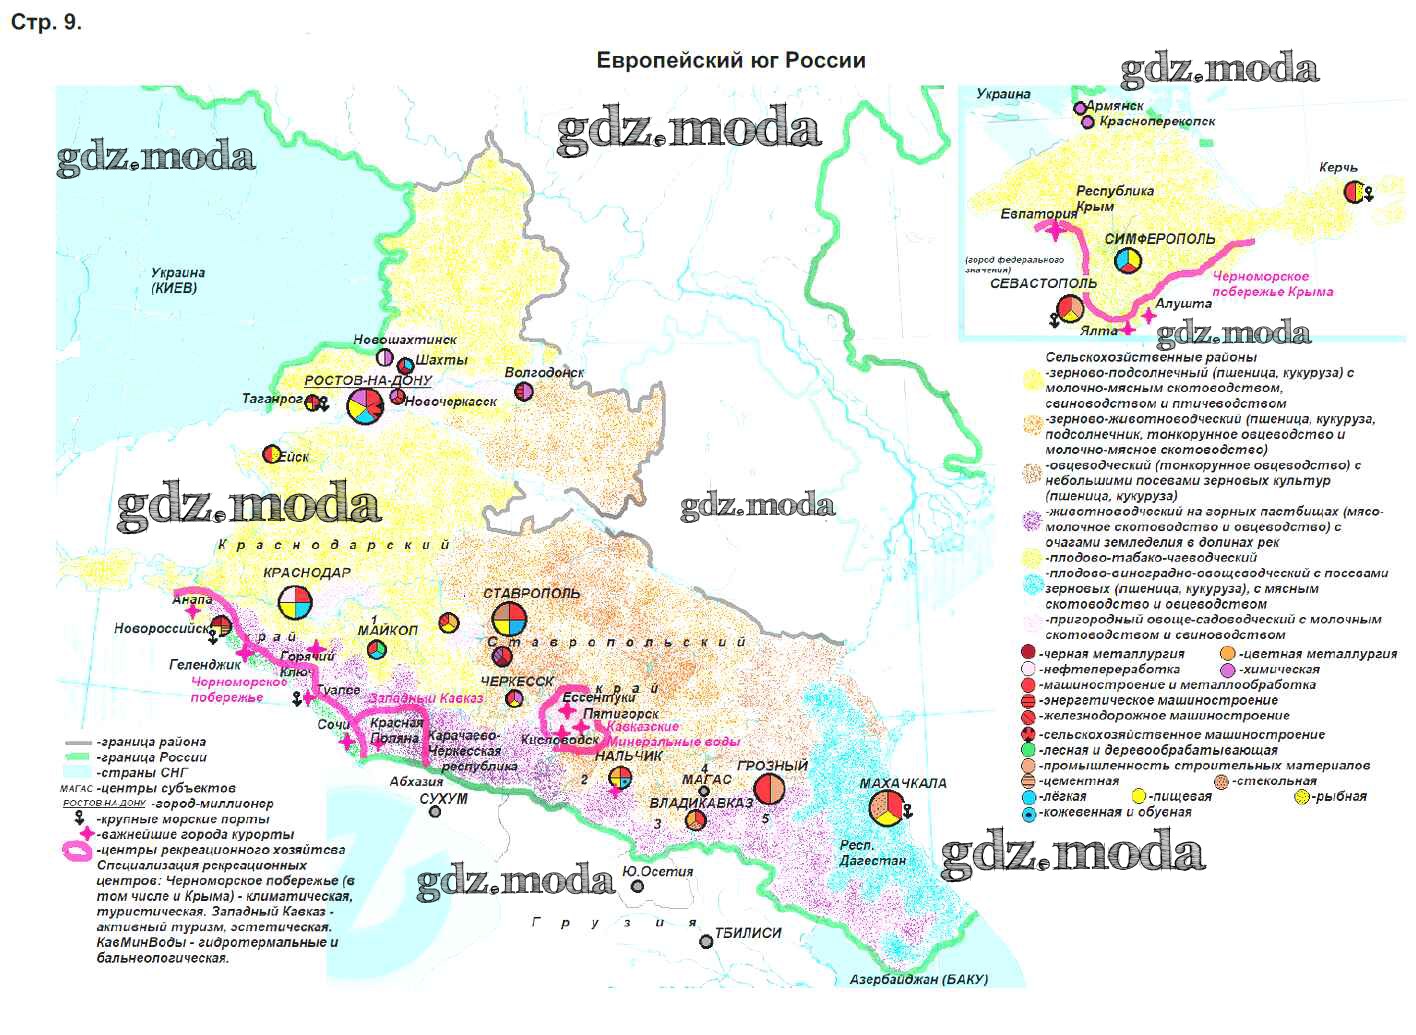 Контурная карта 8 класс европейский юг россии